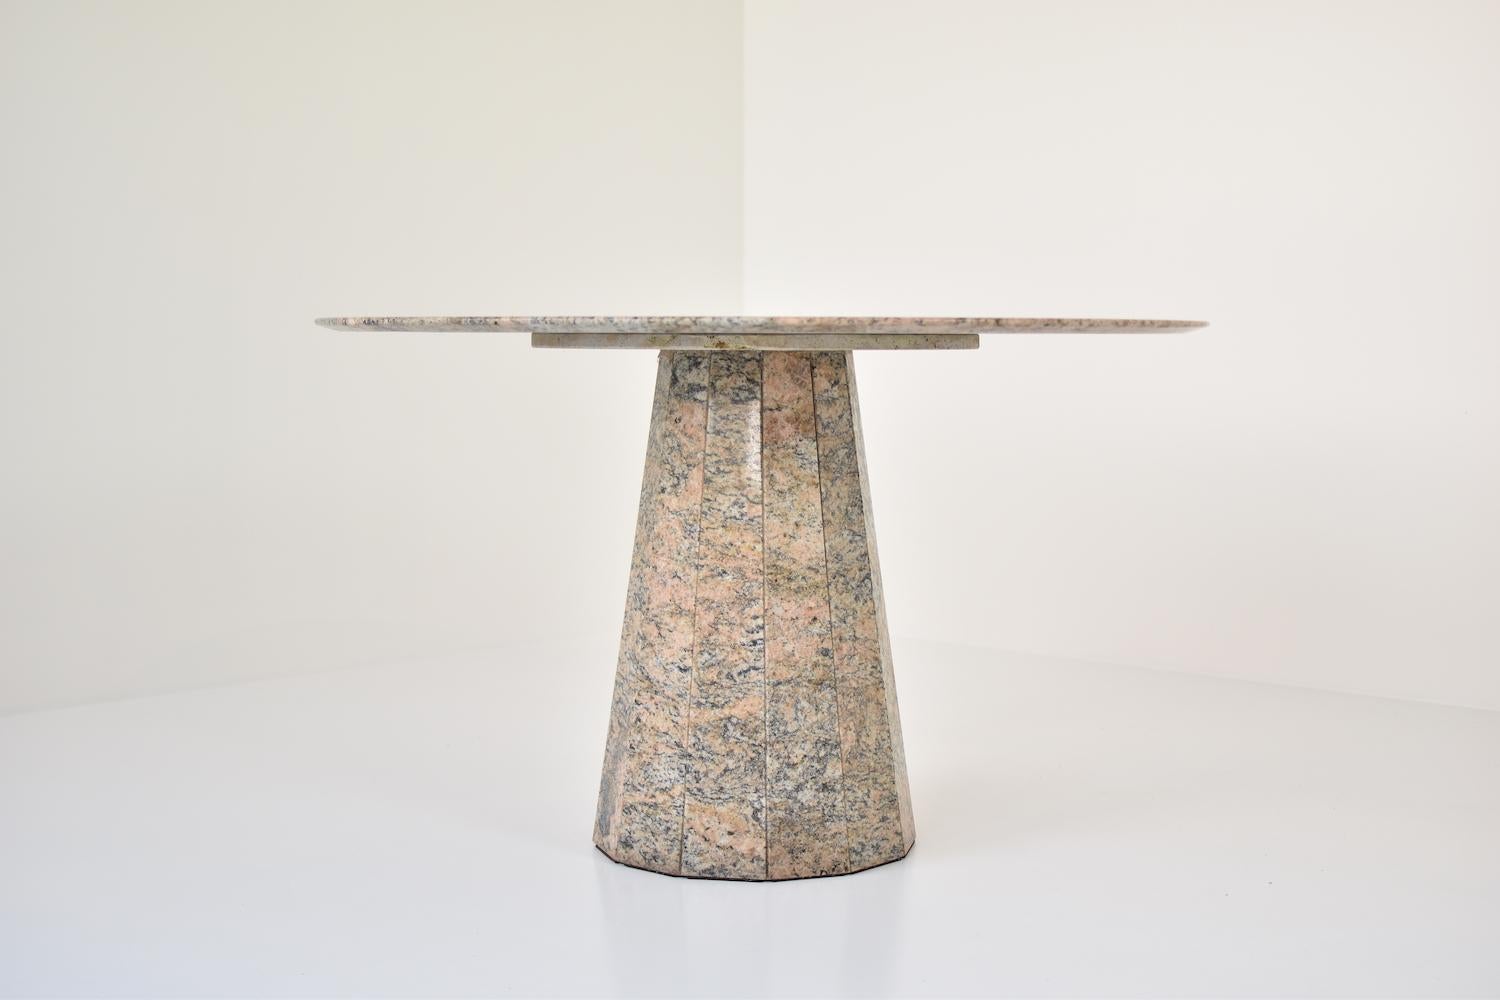 granite round table